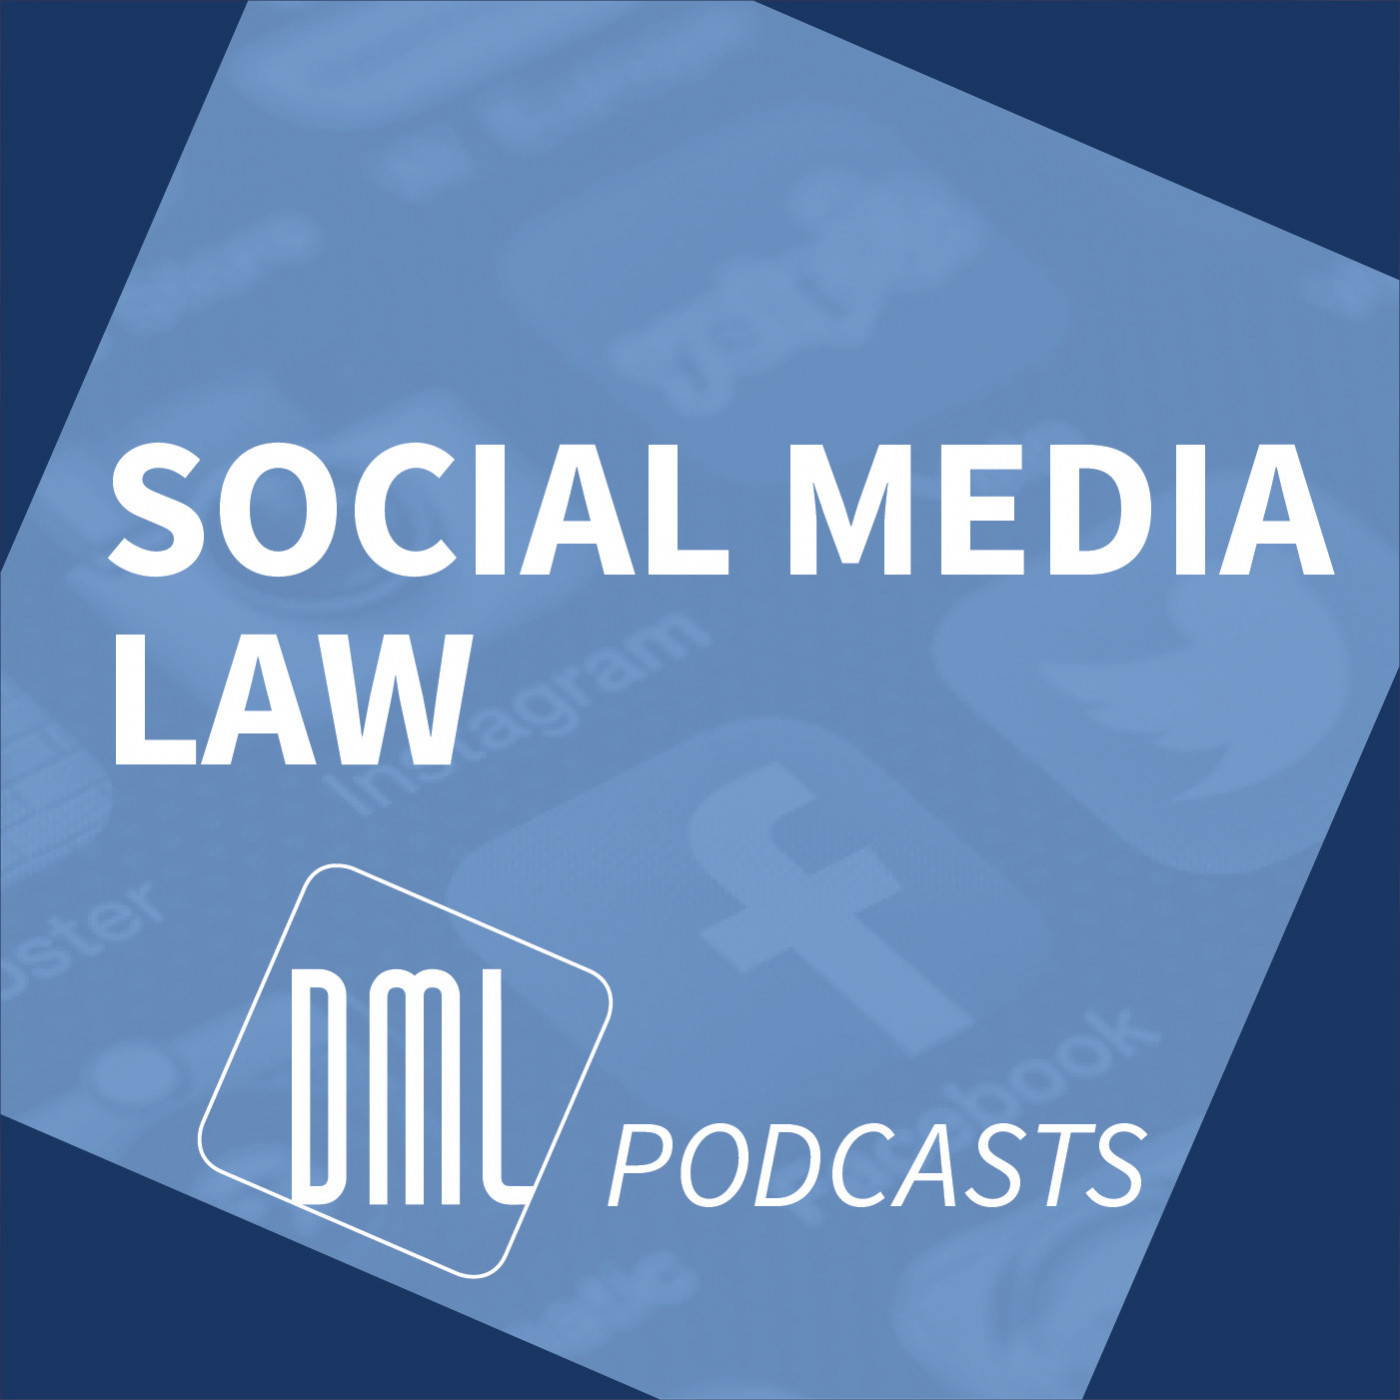 Social media law